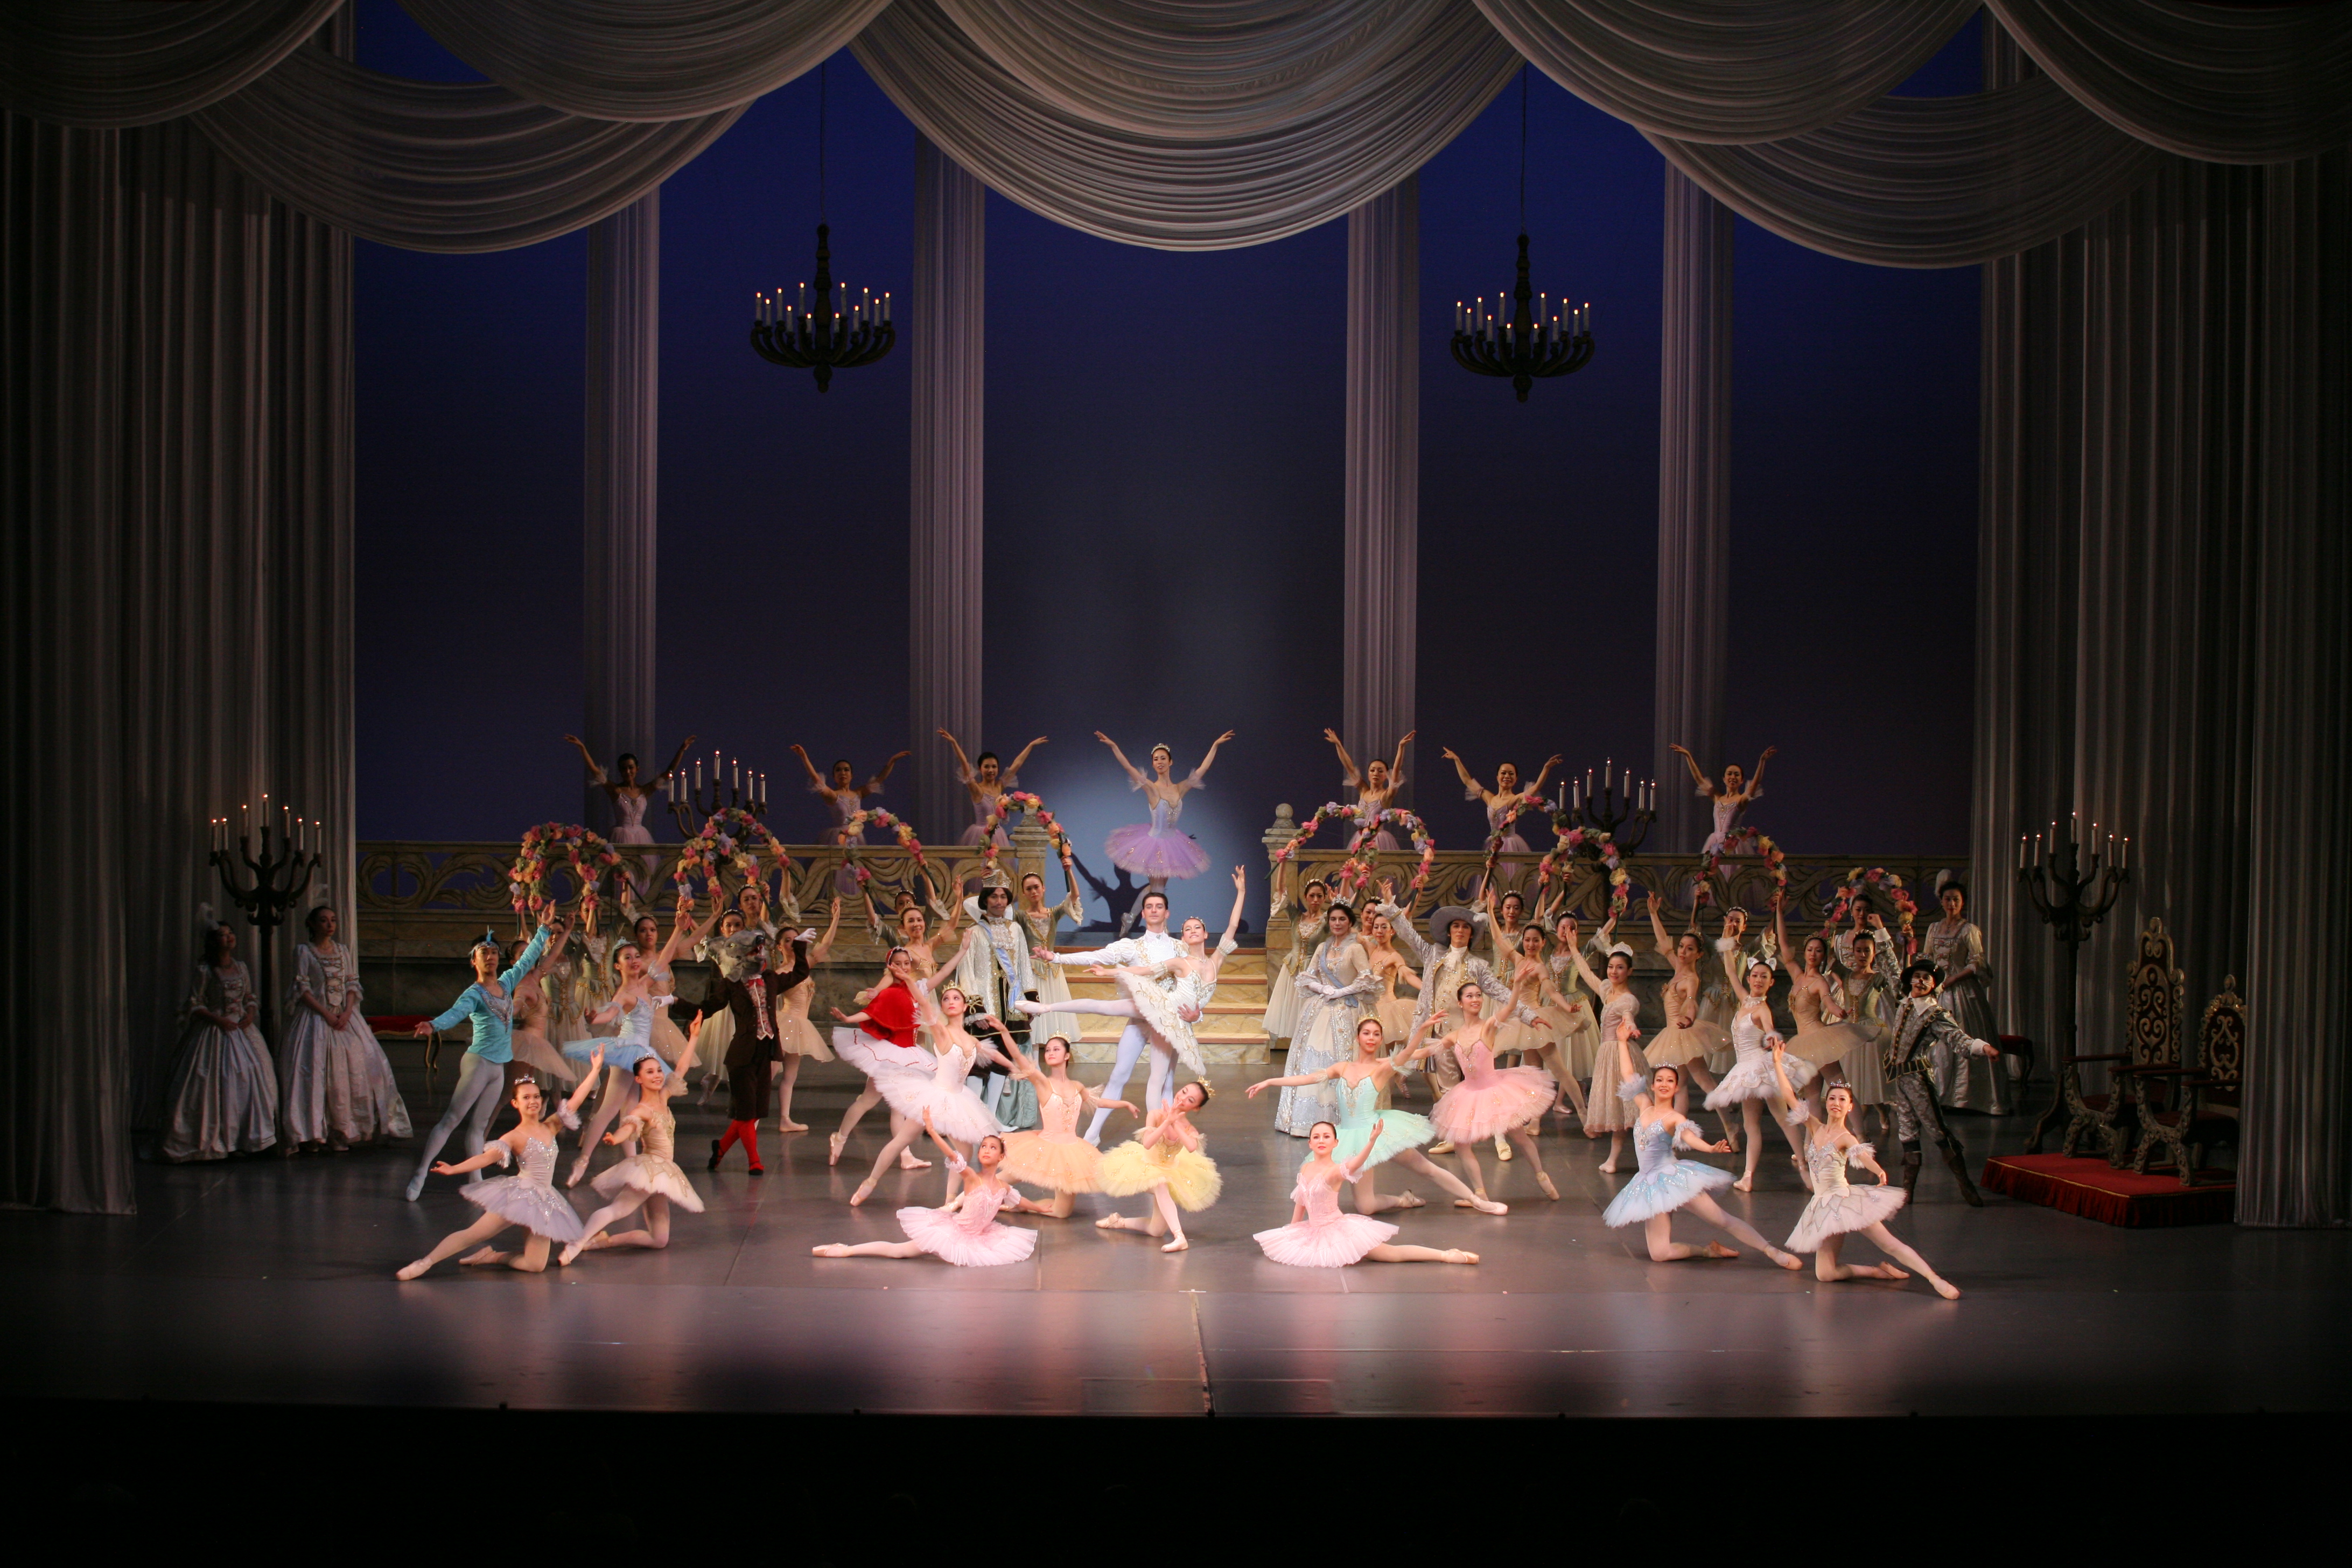 記事「15歳以上限定。バレエ『眠れる森の美女 全幕』出演者募集オーディション情報」の画像